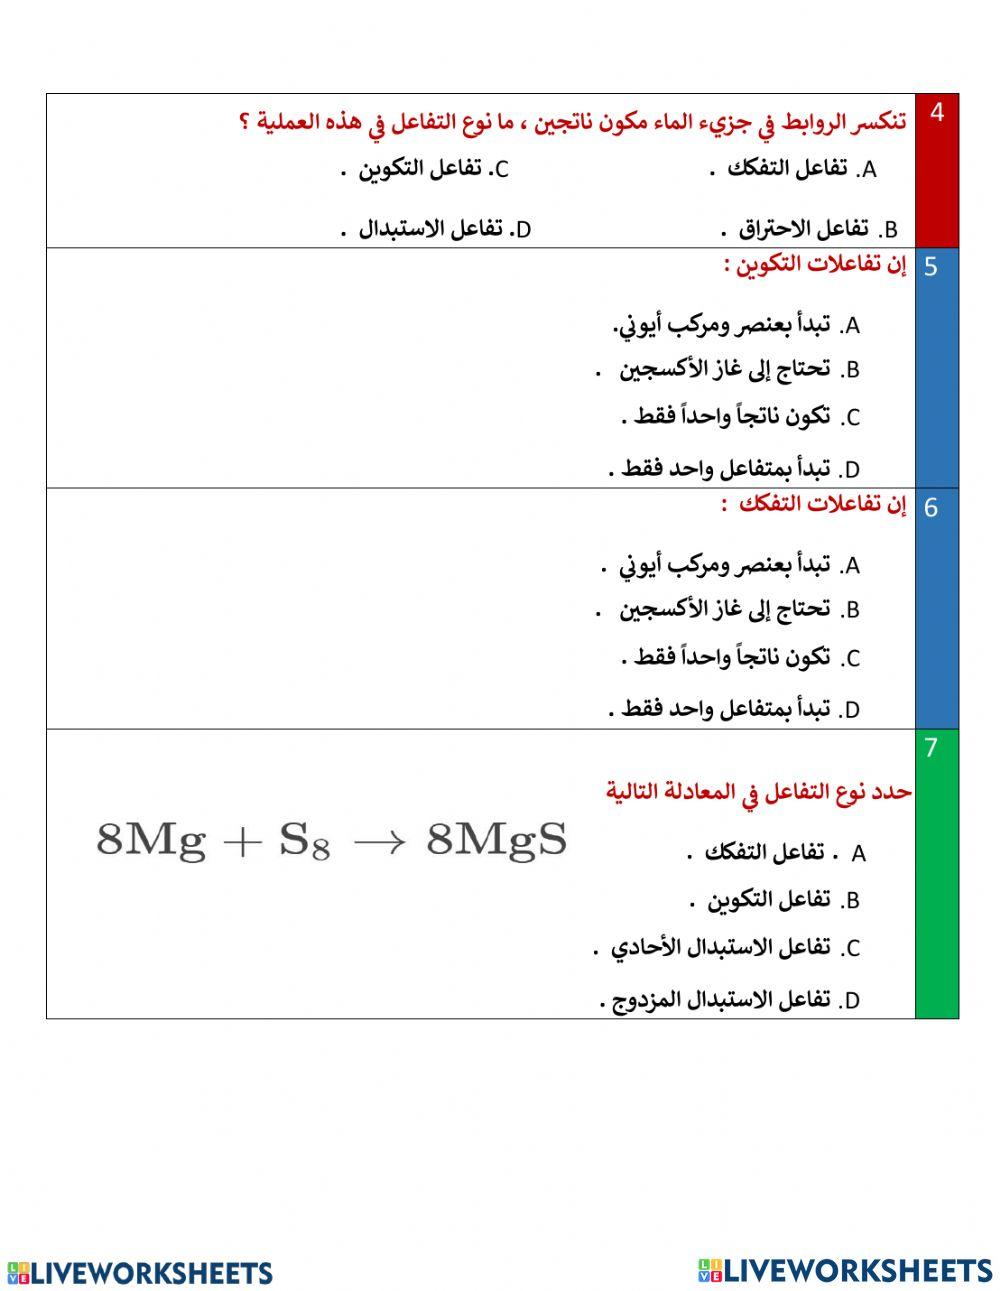 تقييم ختامي -أنواع التفاعلات الكيميائية - جزء 1